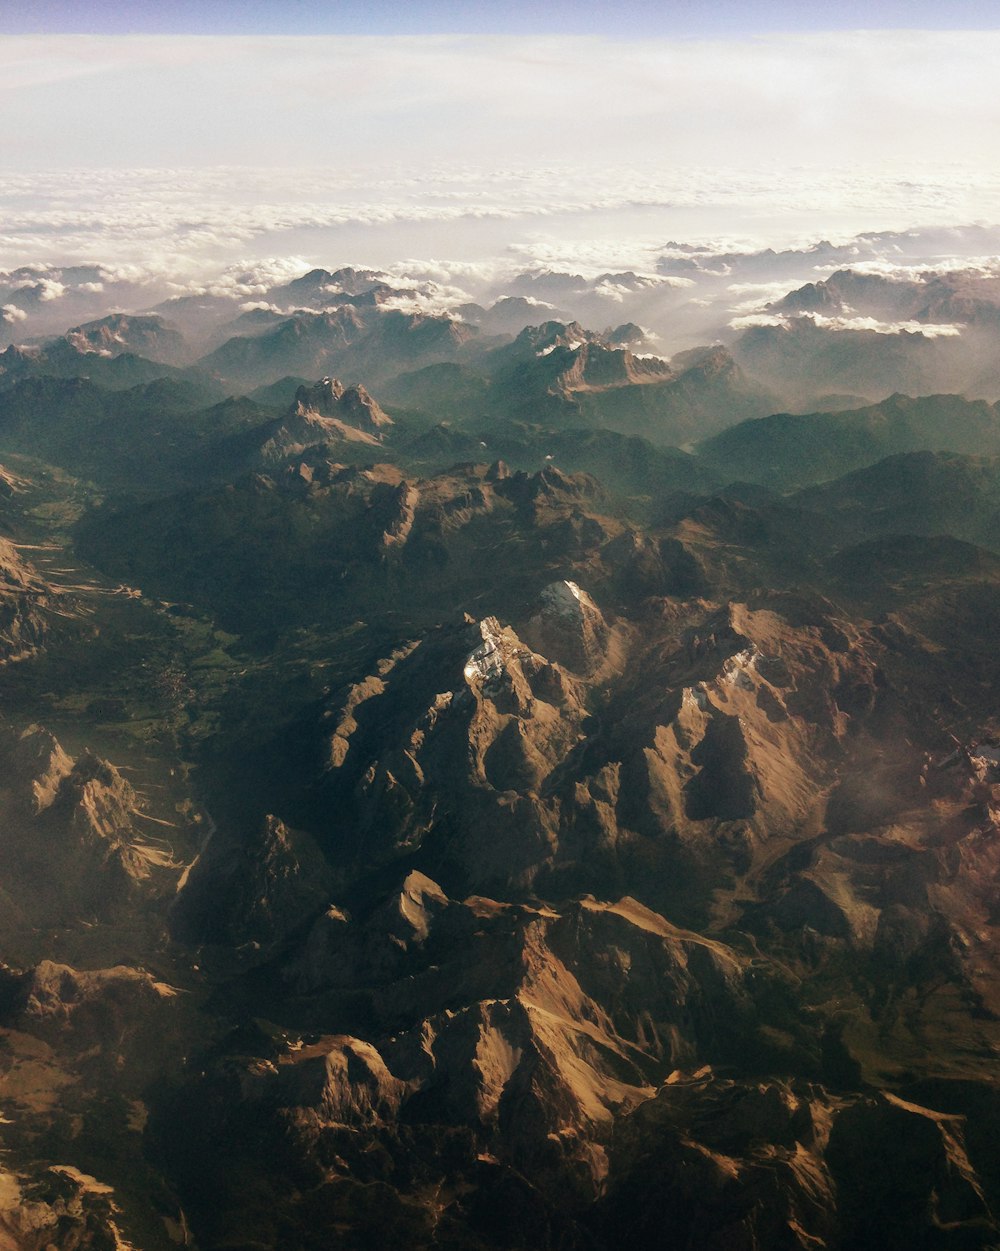 Fotografía aérea de las montañas marrones